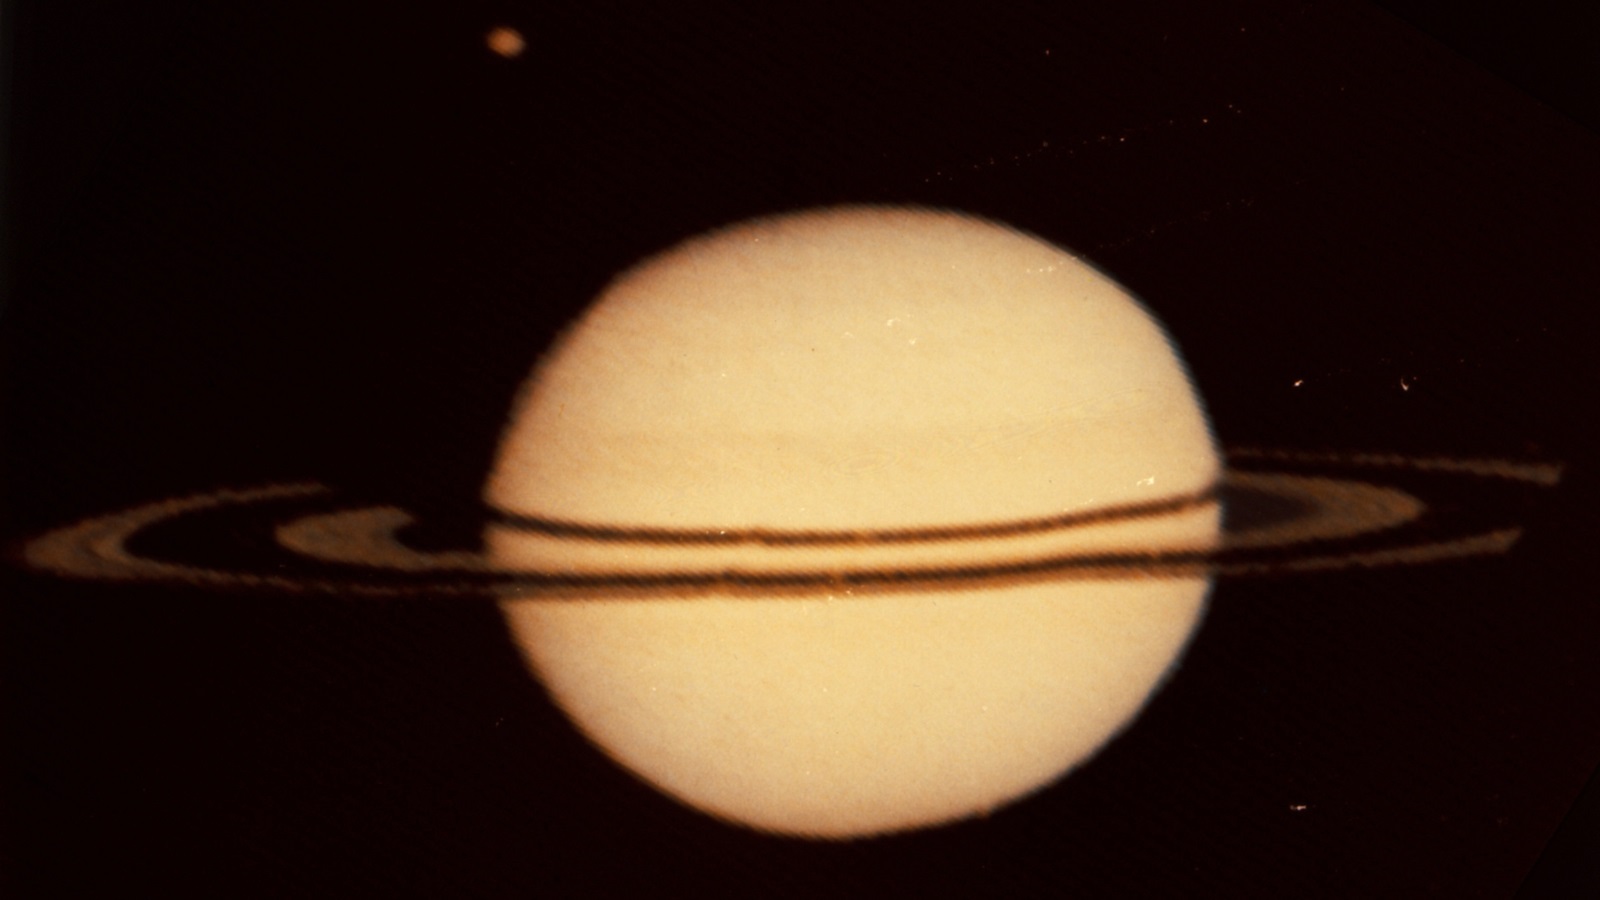 ‪دراسة أصول كوكب زحل وقمره تيتان ما زالت بحثا عالقا‬ (ويكيميديا كومونز)